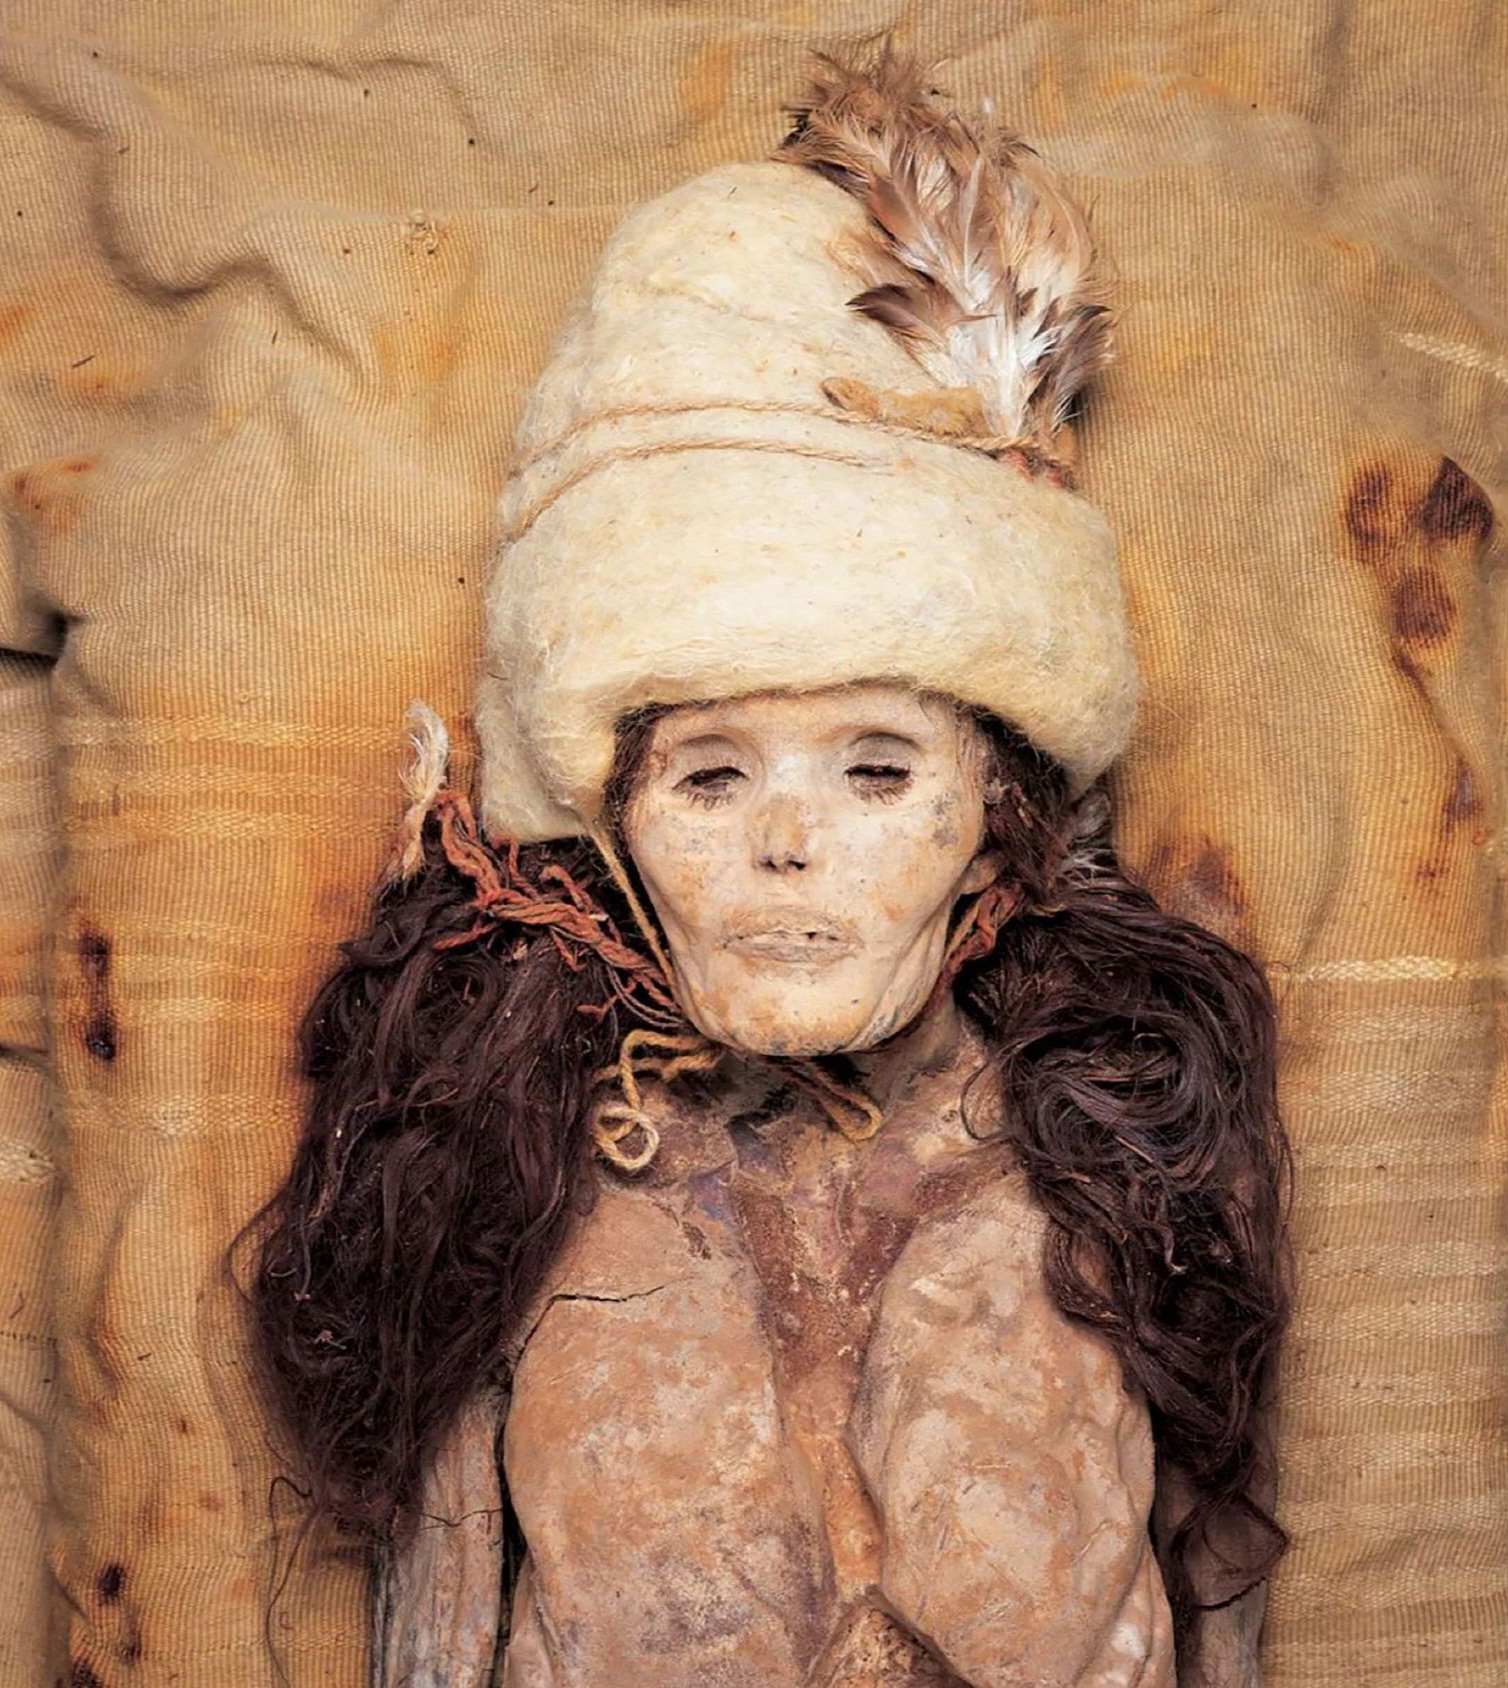 Mysterieuze mummies gevonden in de Chinese woestijn hebben een onverwachte oorsprong die verband houdt met Siberië en Amerika